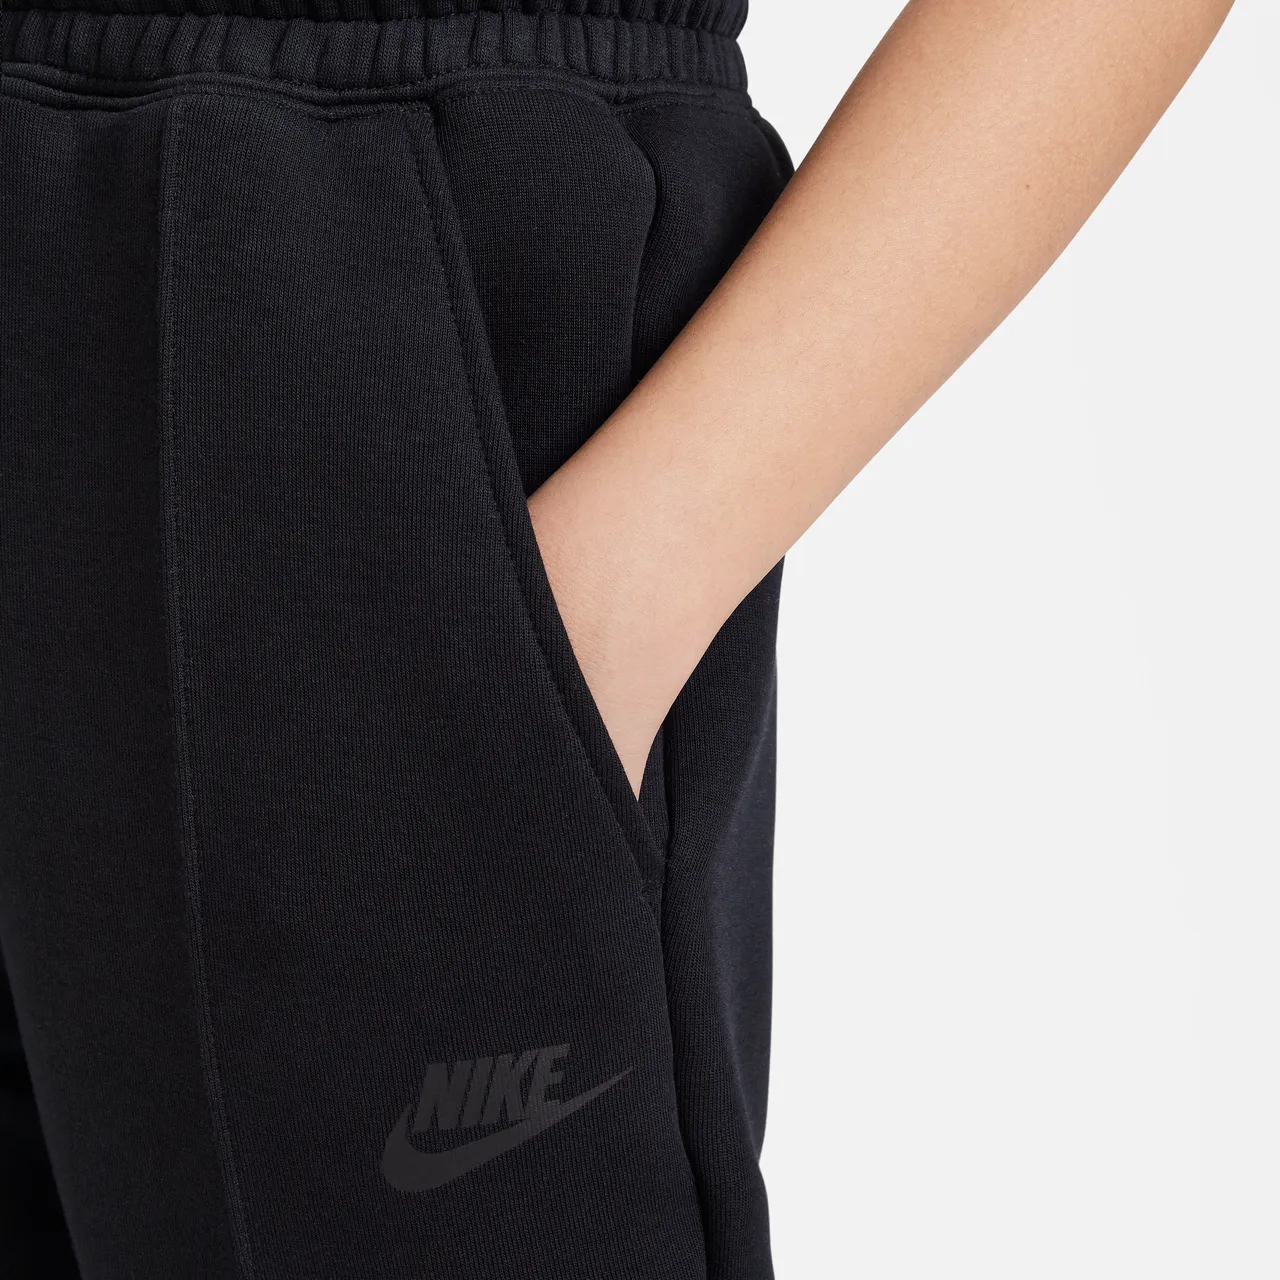 Nike Sportswear Tech Fleece joggingbroek voor meisjes - Zwart